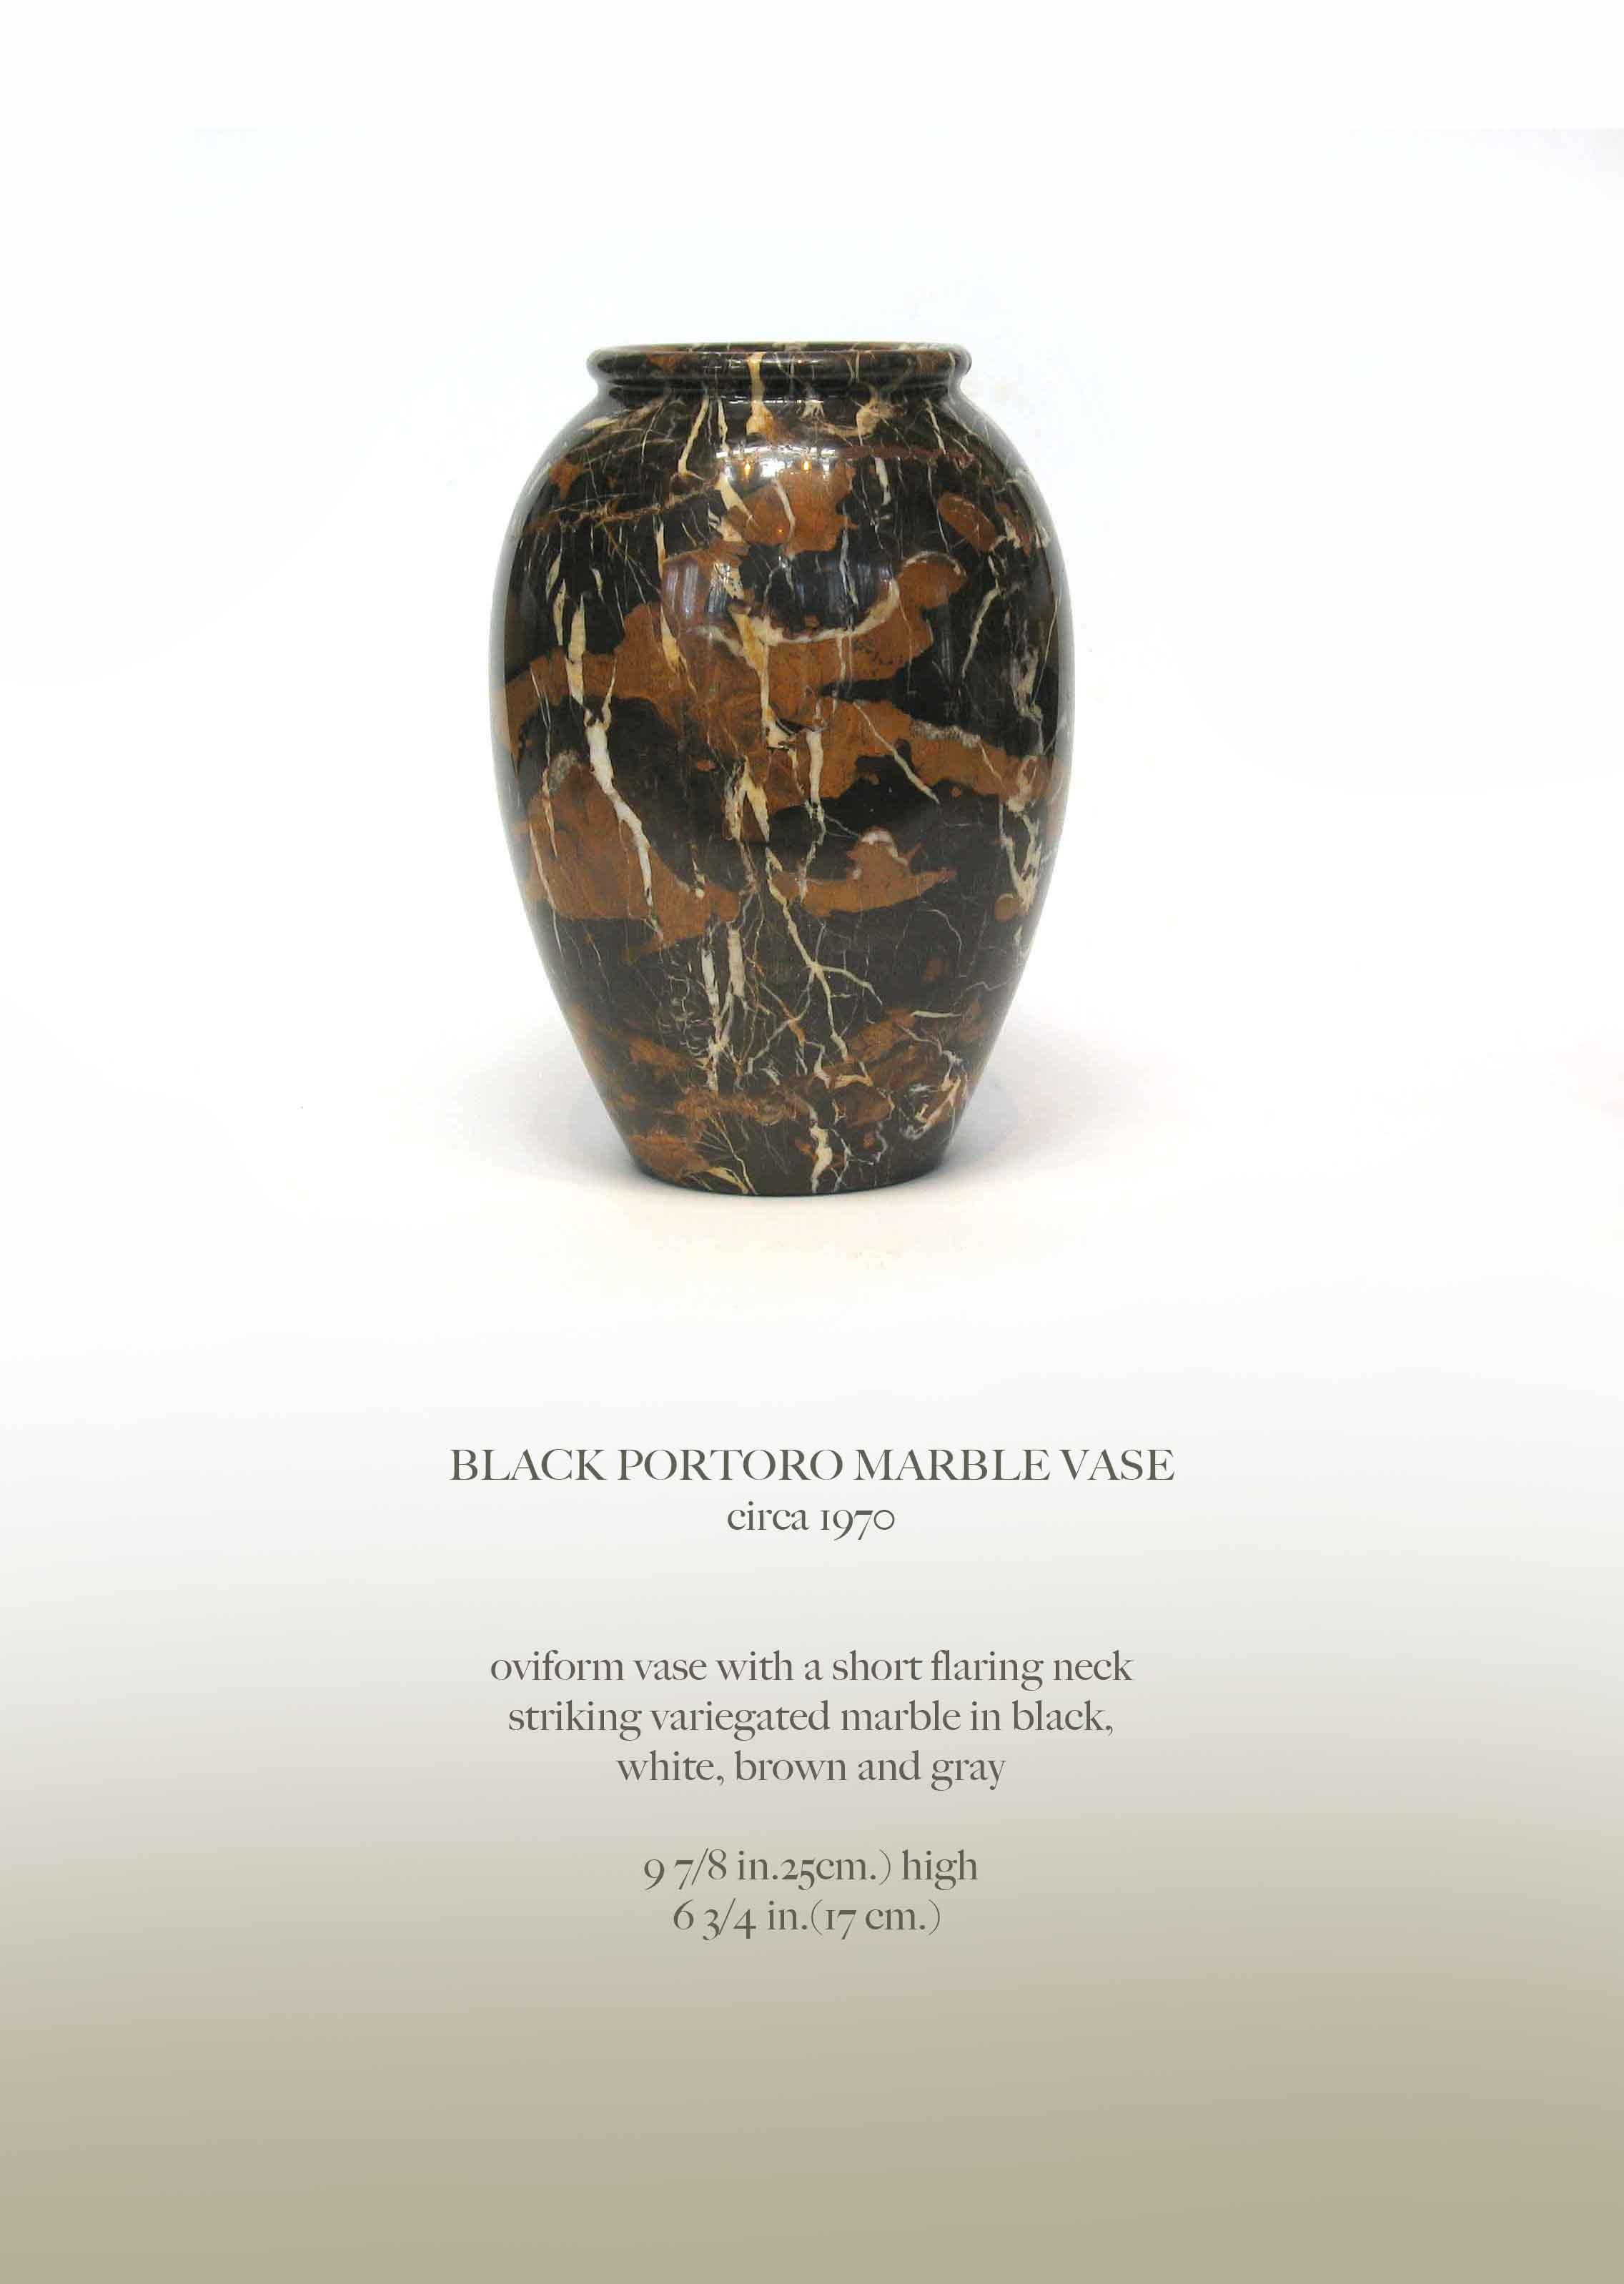 VASE AUS SCHWARZEM PORTORO-MARMOR
um 1970

Vase in Form A von Ovid mit kurzem, ausladendem Hals
auffallend vielfarbiger Marmor in Schwarz,
weiß, braun und grau.

9 7/8